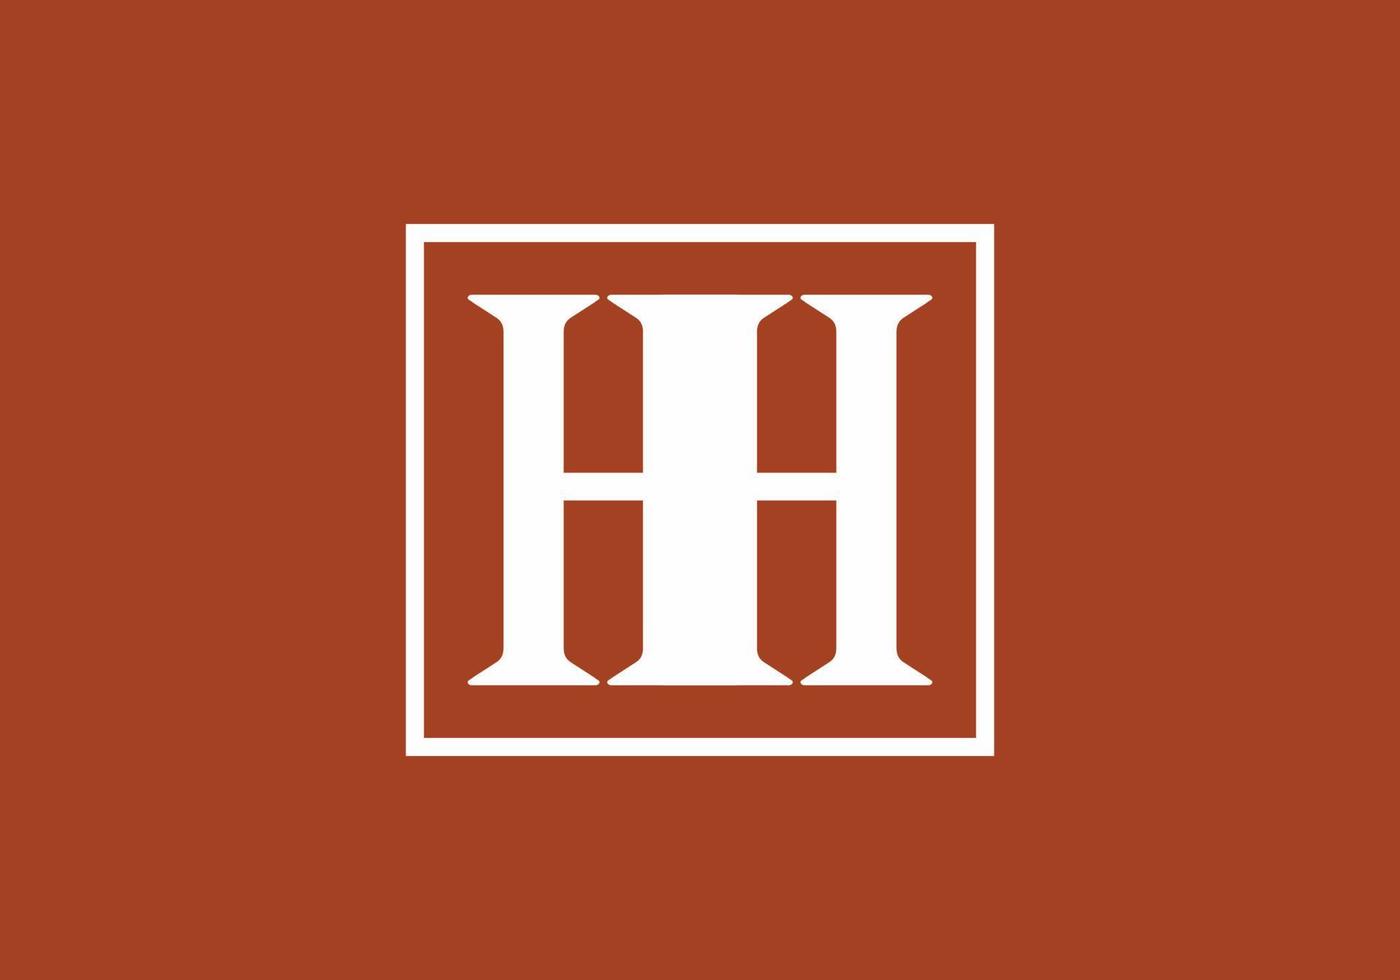 marrón blanco hh letra inicial en cuadrado vector